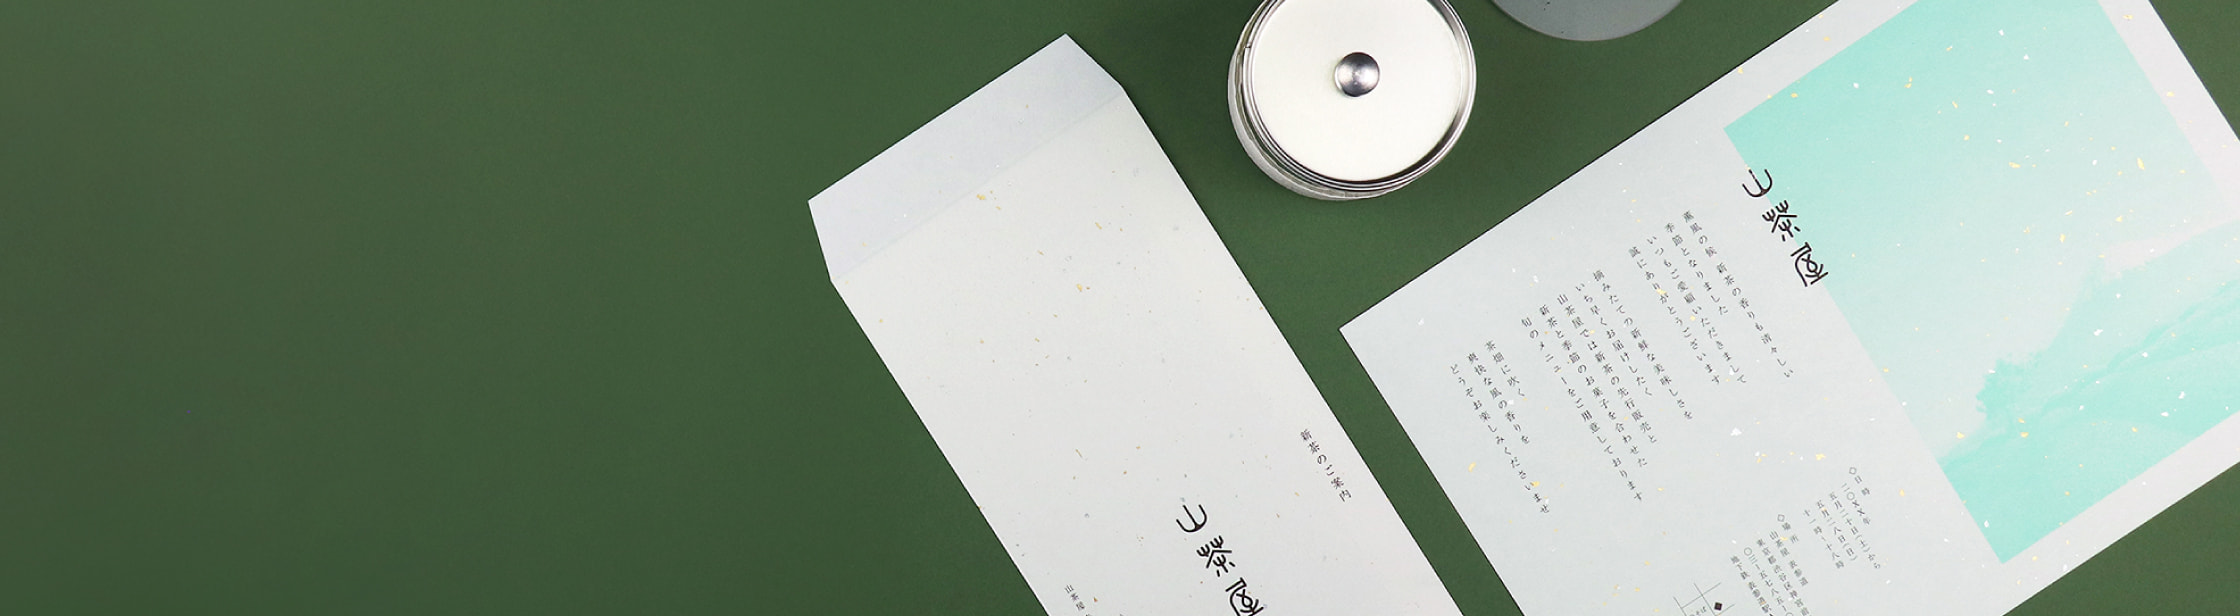 和素材の封筒 カード 羽車公式サイト 紙 印刷 デザイン